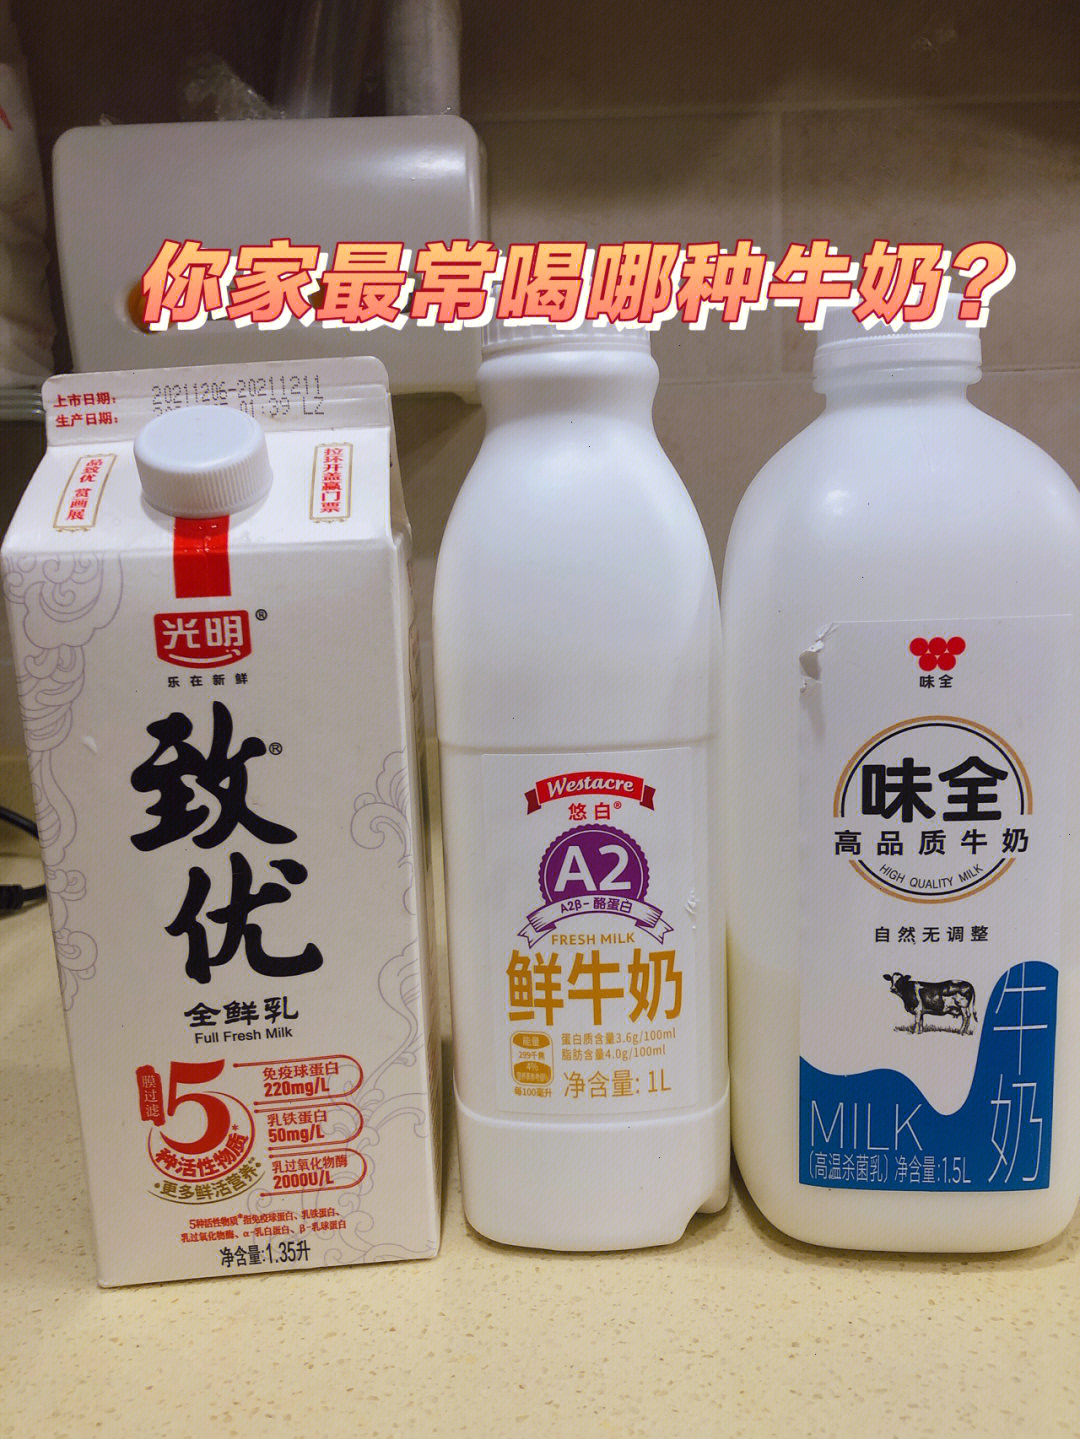 你家最常喝的牛奶牌子是哪个捏?